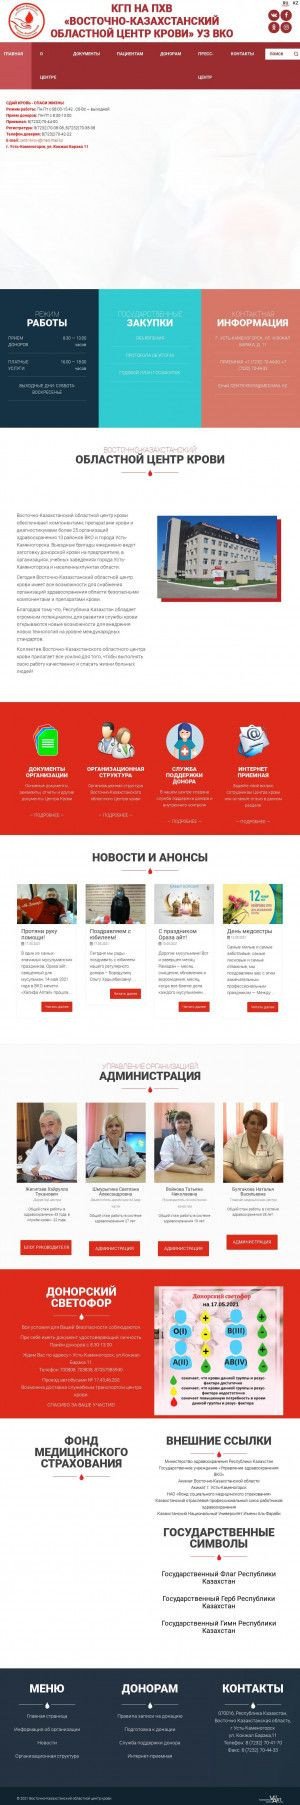 Предпросмотр для www.vkock.kz — Восточно-Казахстанский областной центр крови